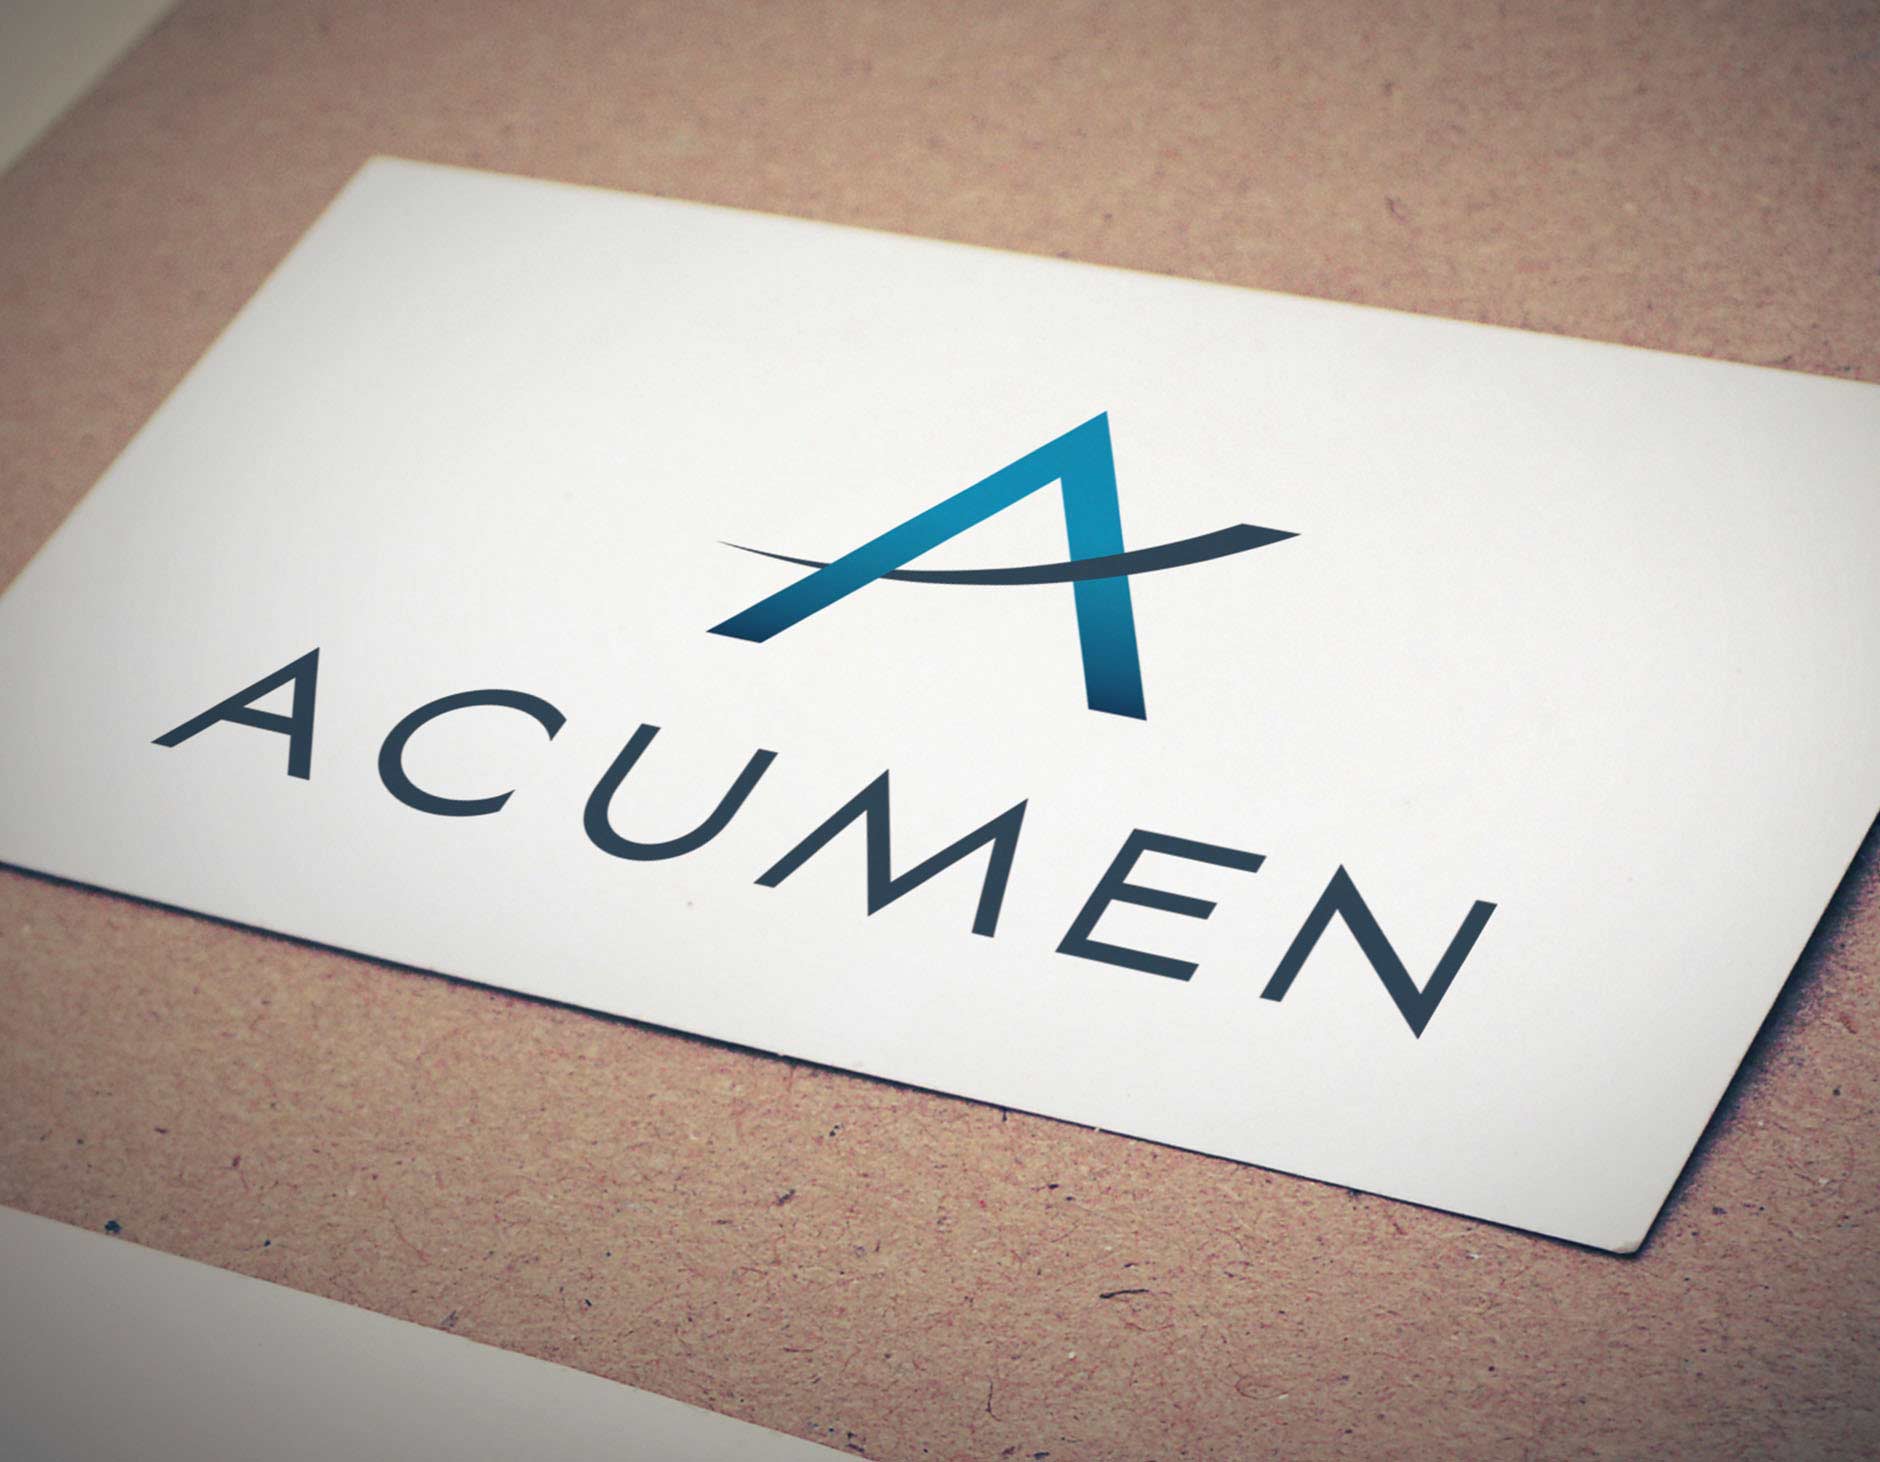 Acumen Identity Design